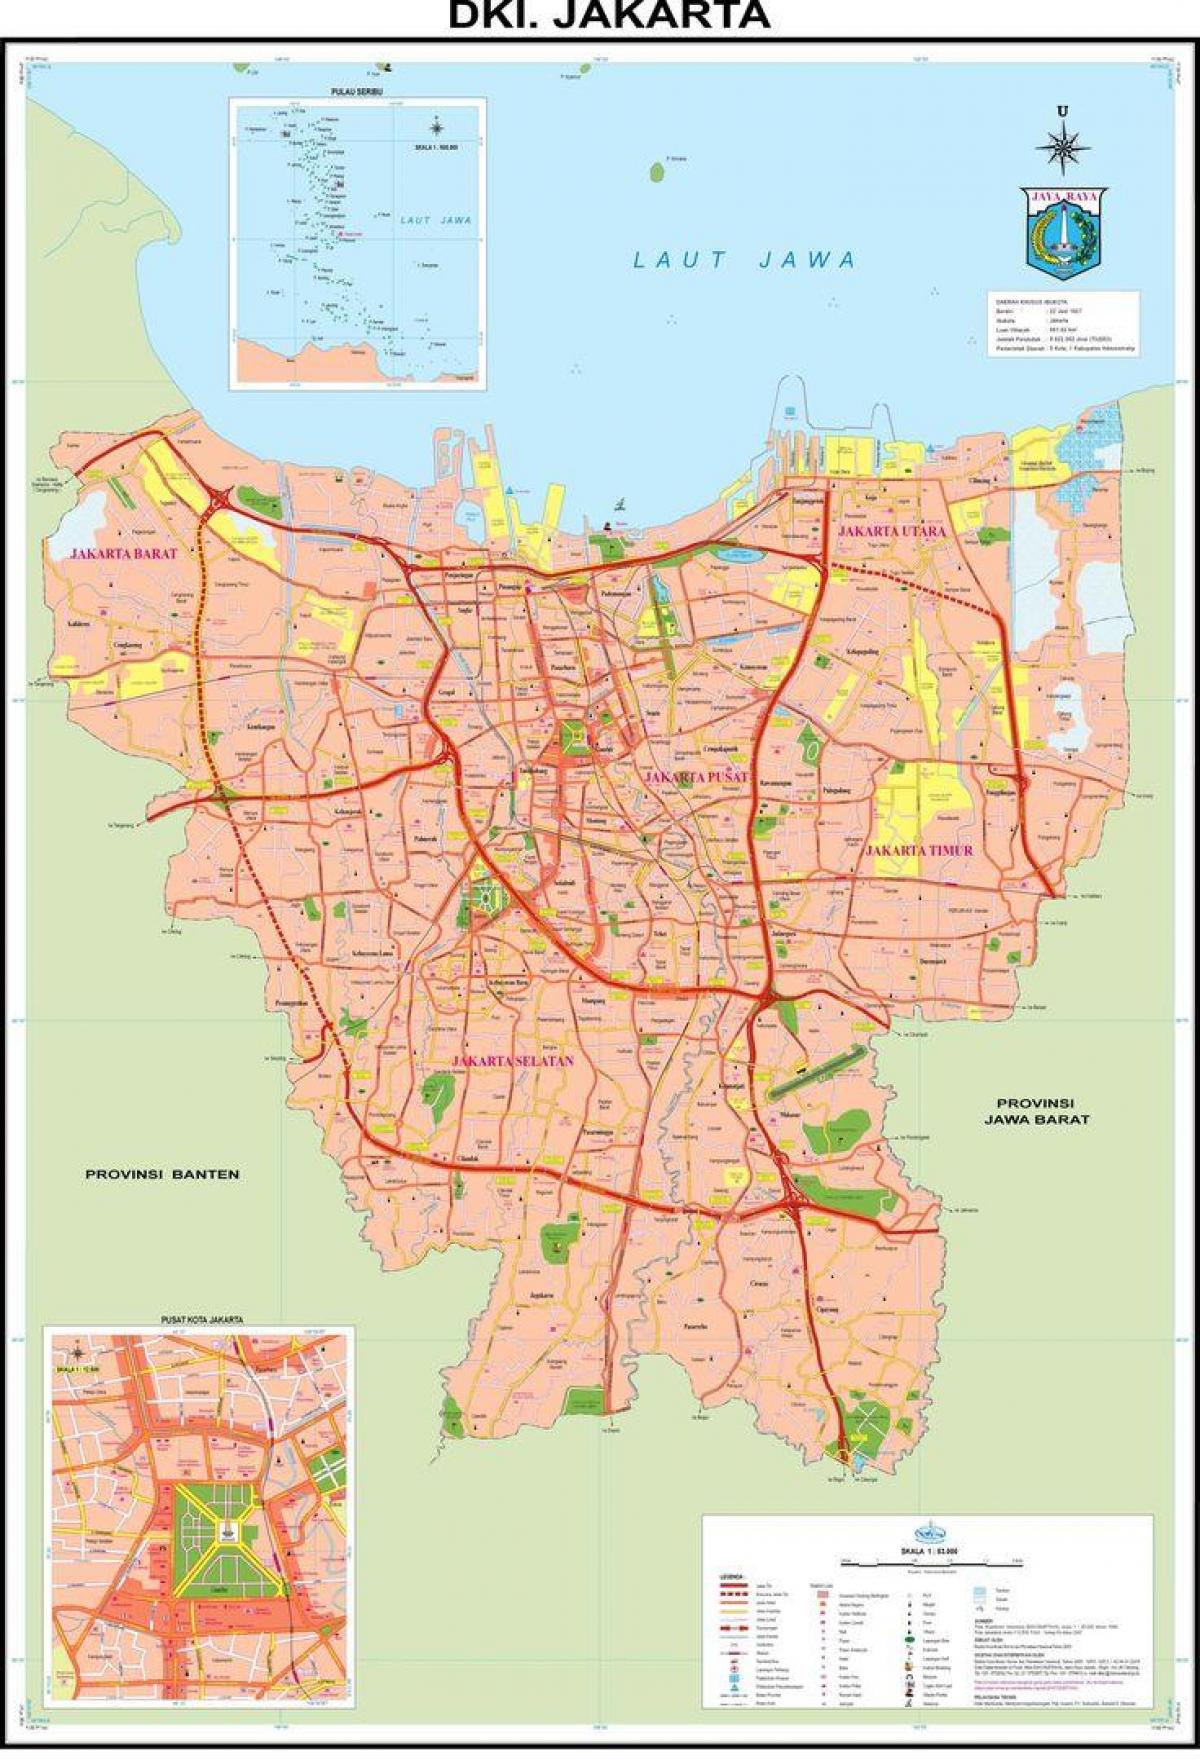 نقشہ کے پرانے شہر جکارتہ